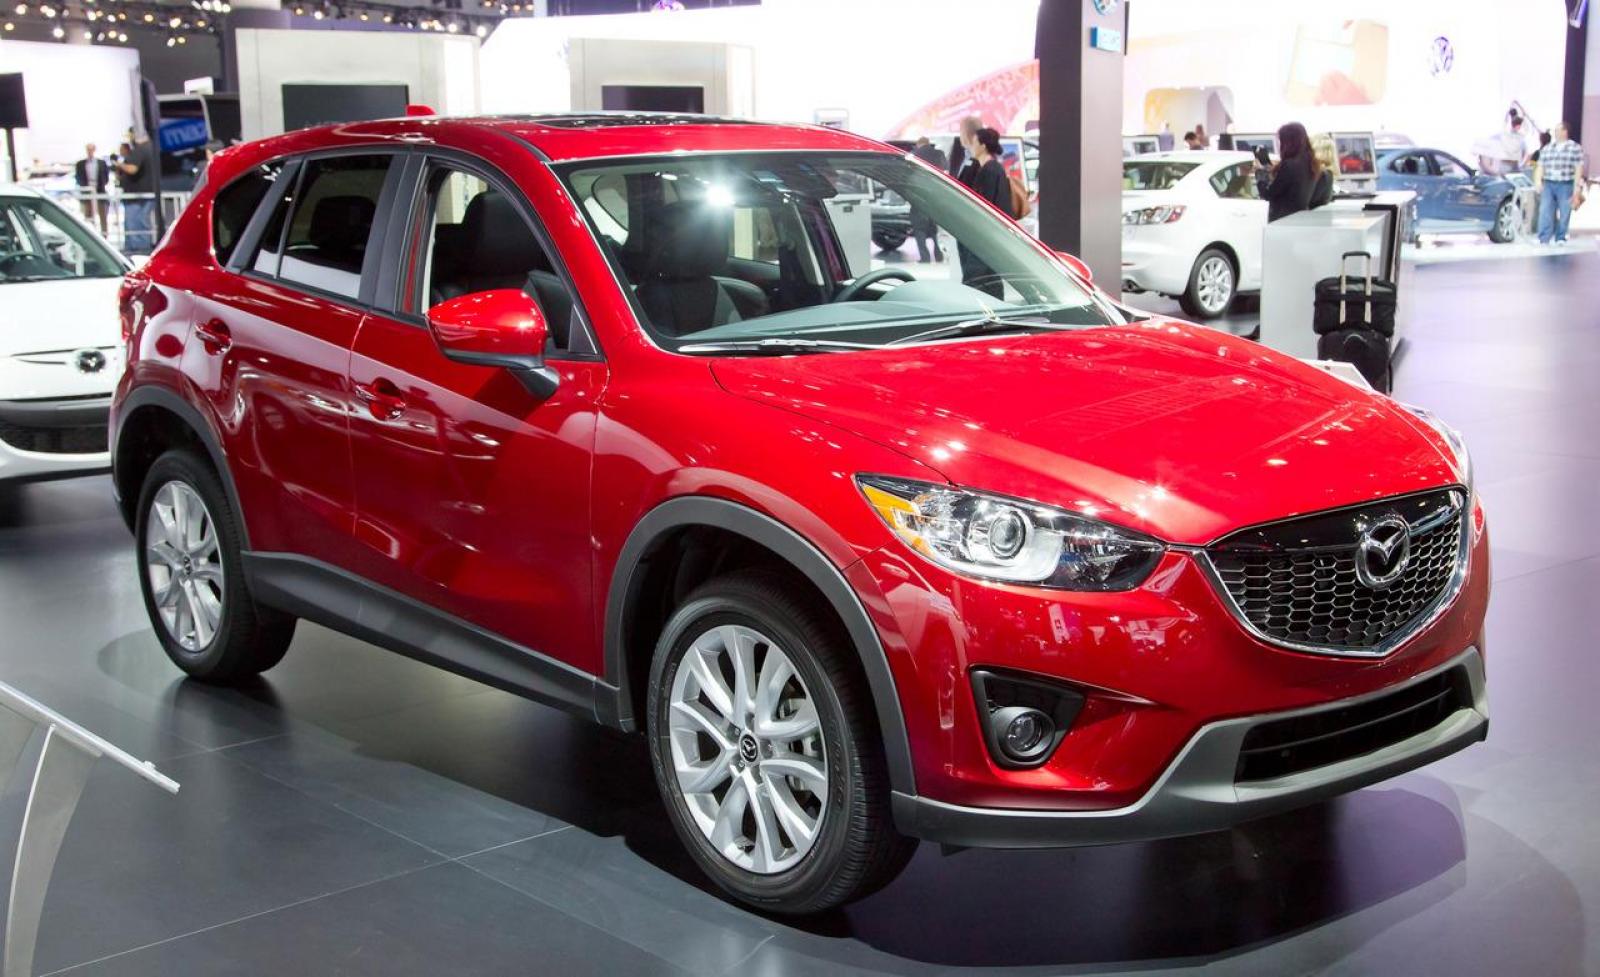 Купить автомобиль мазда сх 5. Mazda CX 5 красная 2014. Мазда СХ-5 2014 красный. Машина Мазда СХ-5 красный. Мазда cx5 красная.